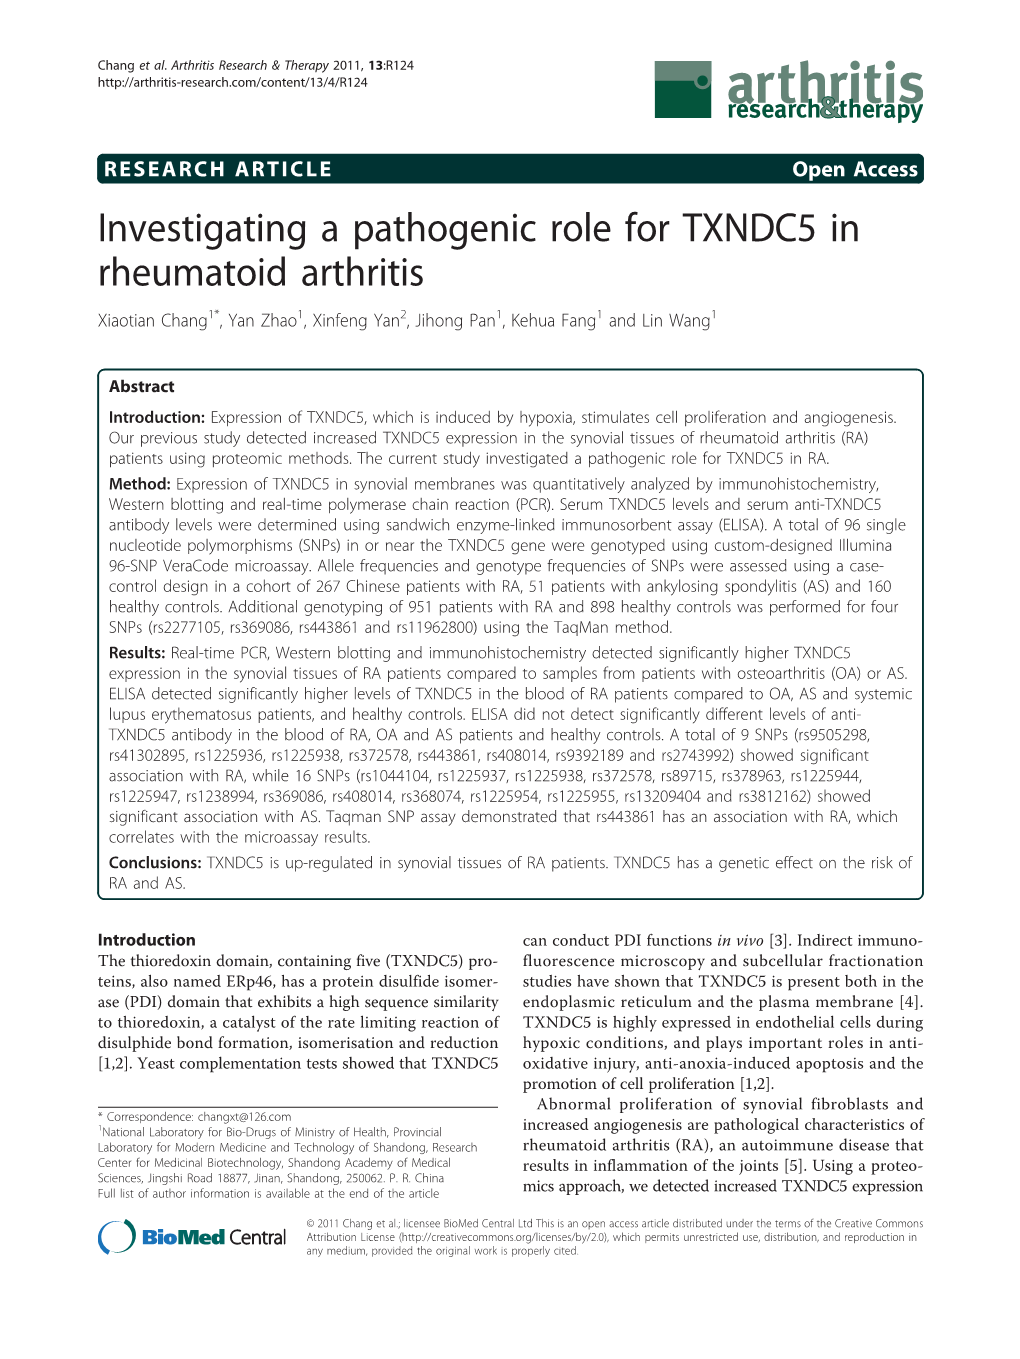 Investigating a Pathogenic Role for TXNDC5 in Rheumatoid Arthritis Xiaotian Chang1*, Yan Zhao1, Xinfeng Yan2, Jihong Pan1, Kehua Fang1 and Lin Wang1